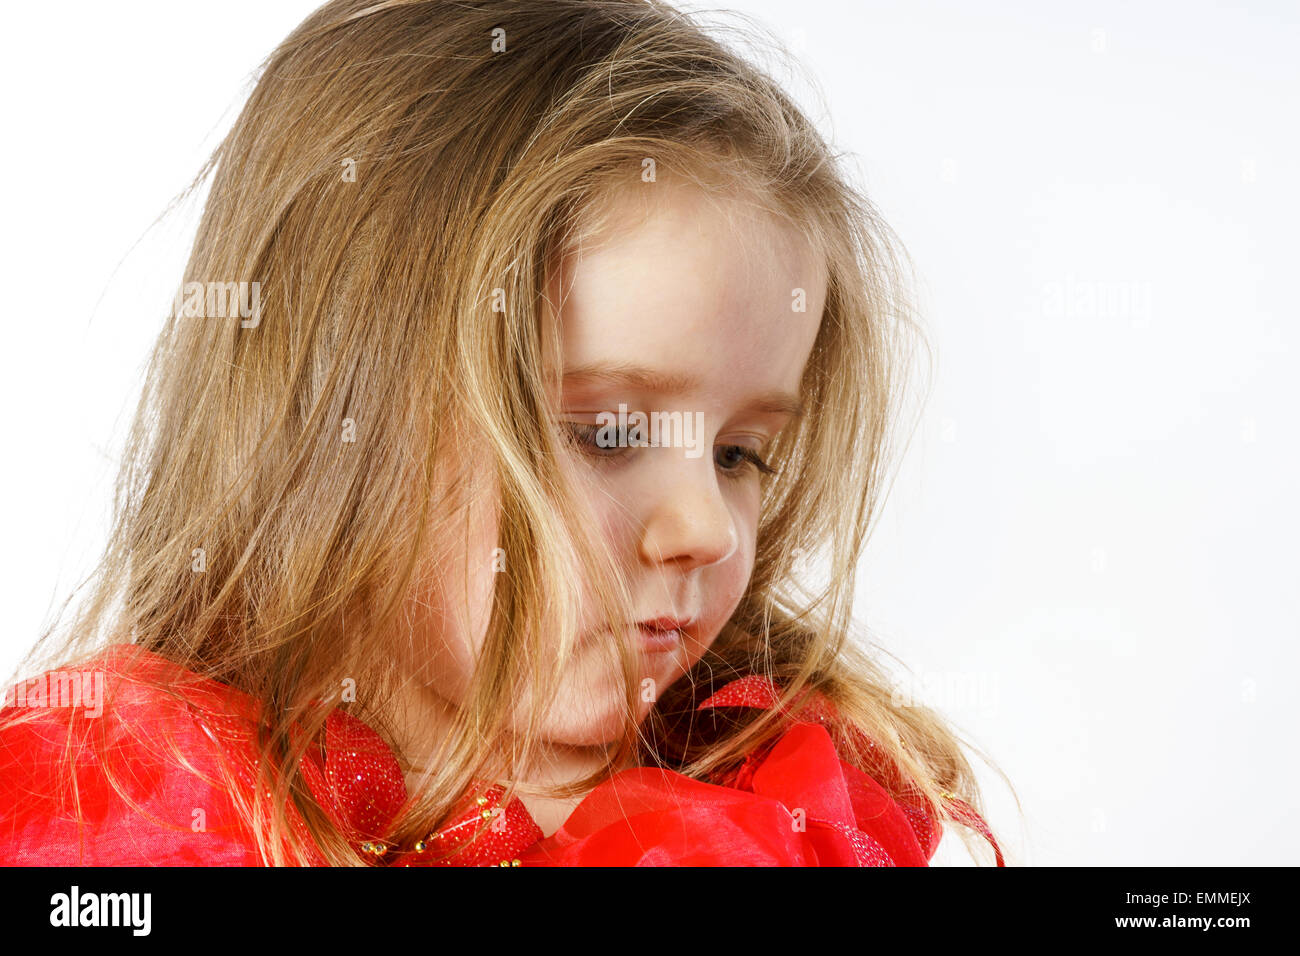 Carino bambina vestita come una principessa, close-up verticale, isolato su bianco Foto Stock